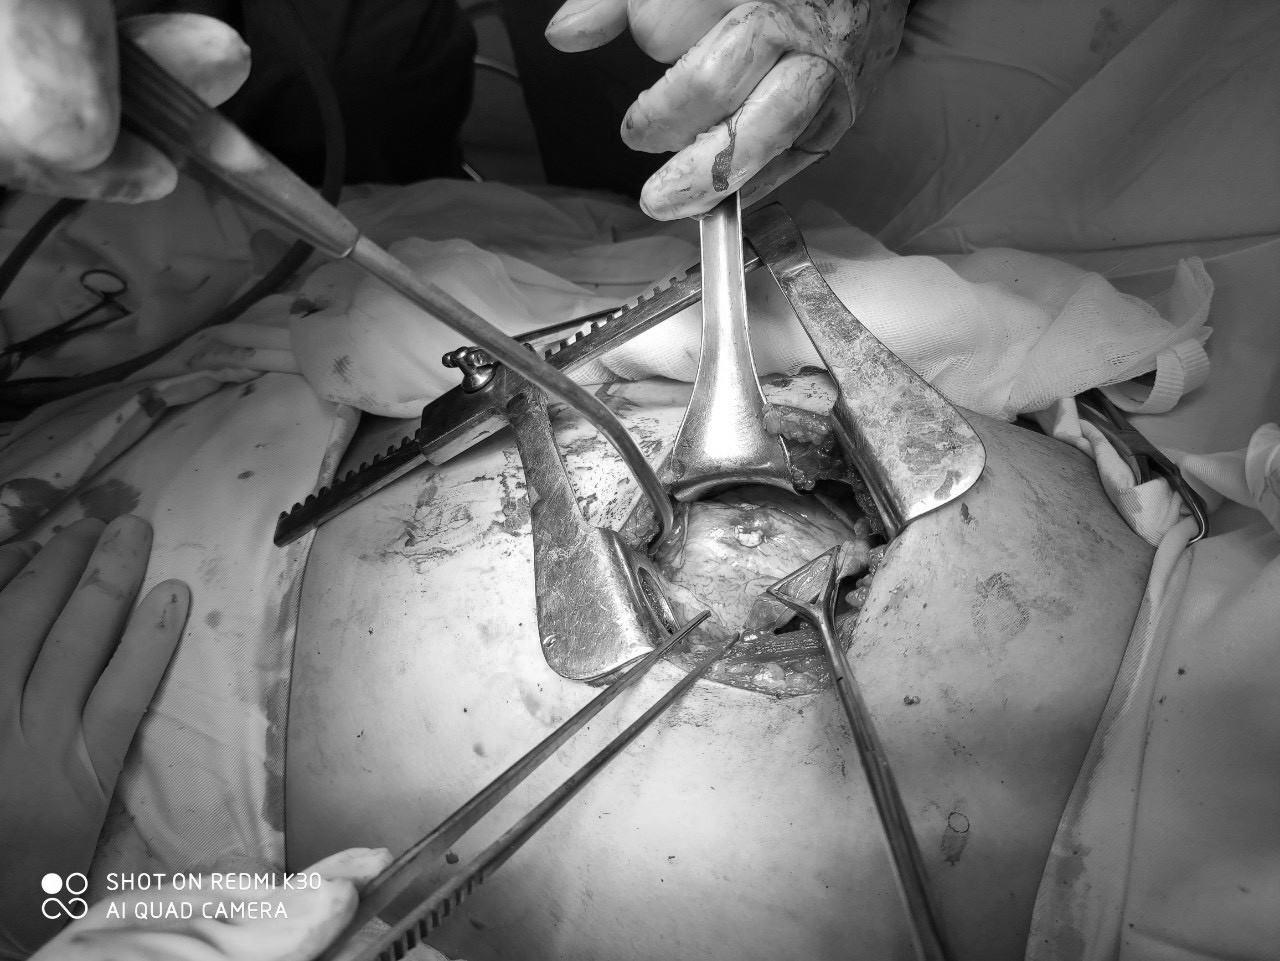 Các bác sĩ tiến hành mở ngực bệnh nhân T để khâu các vết thương tim và lấy đầu đạn. Ảnh: Từ Thành